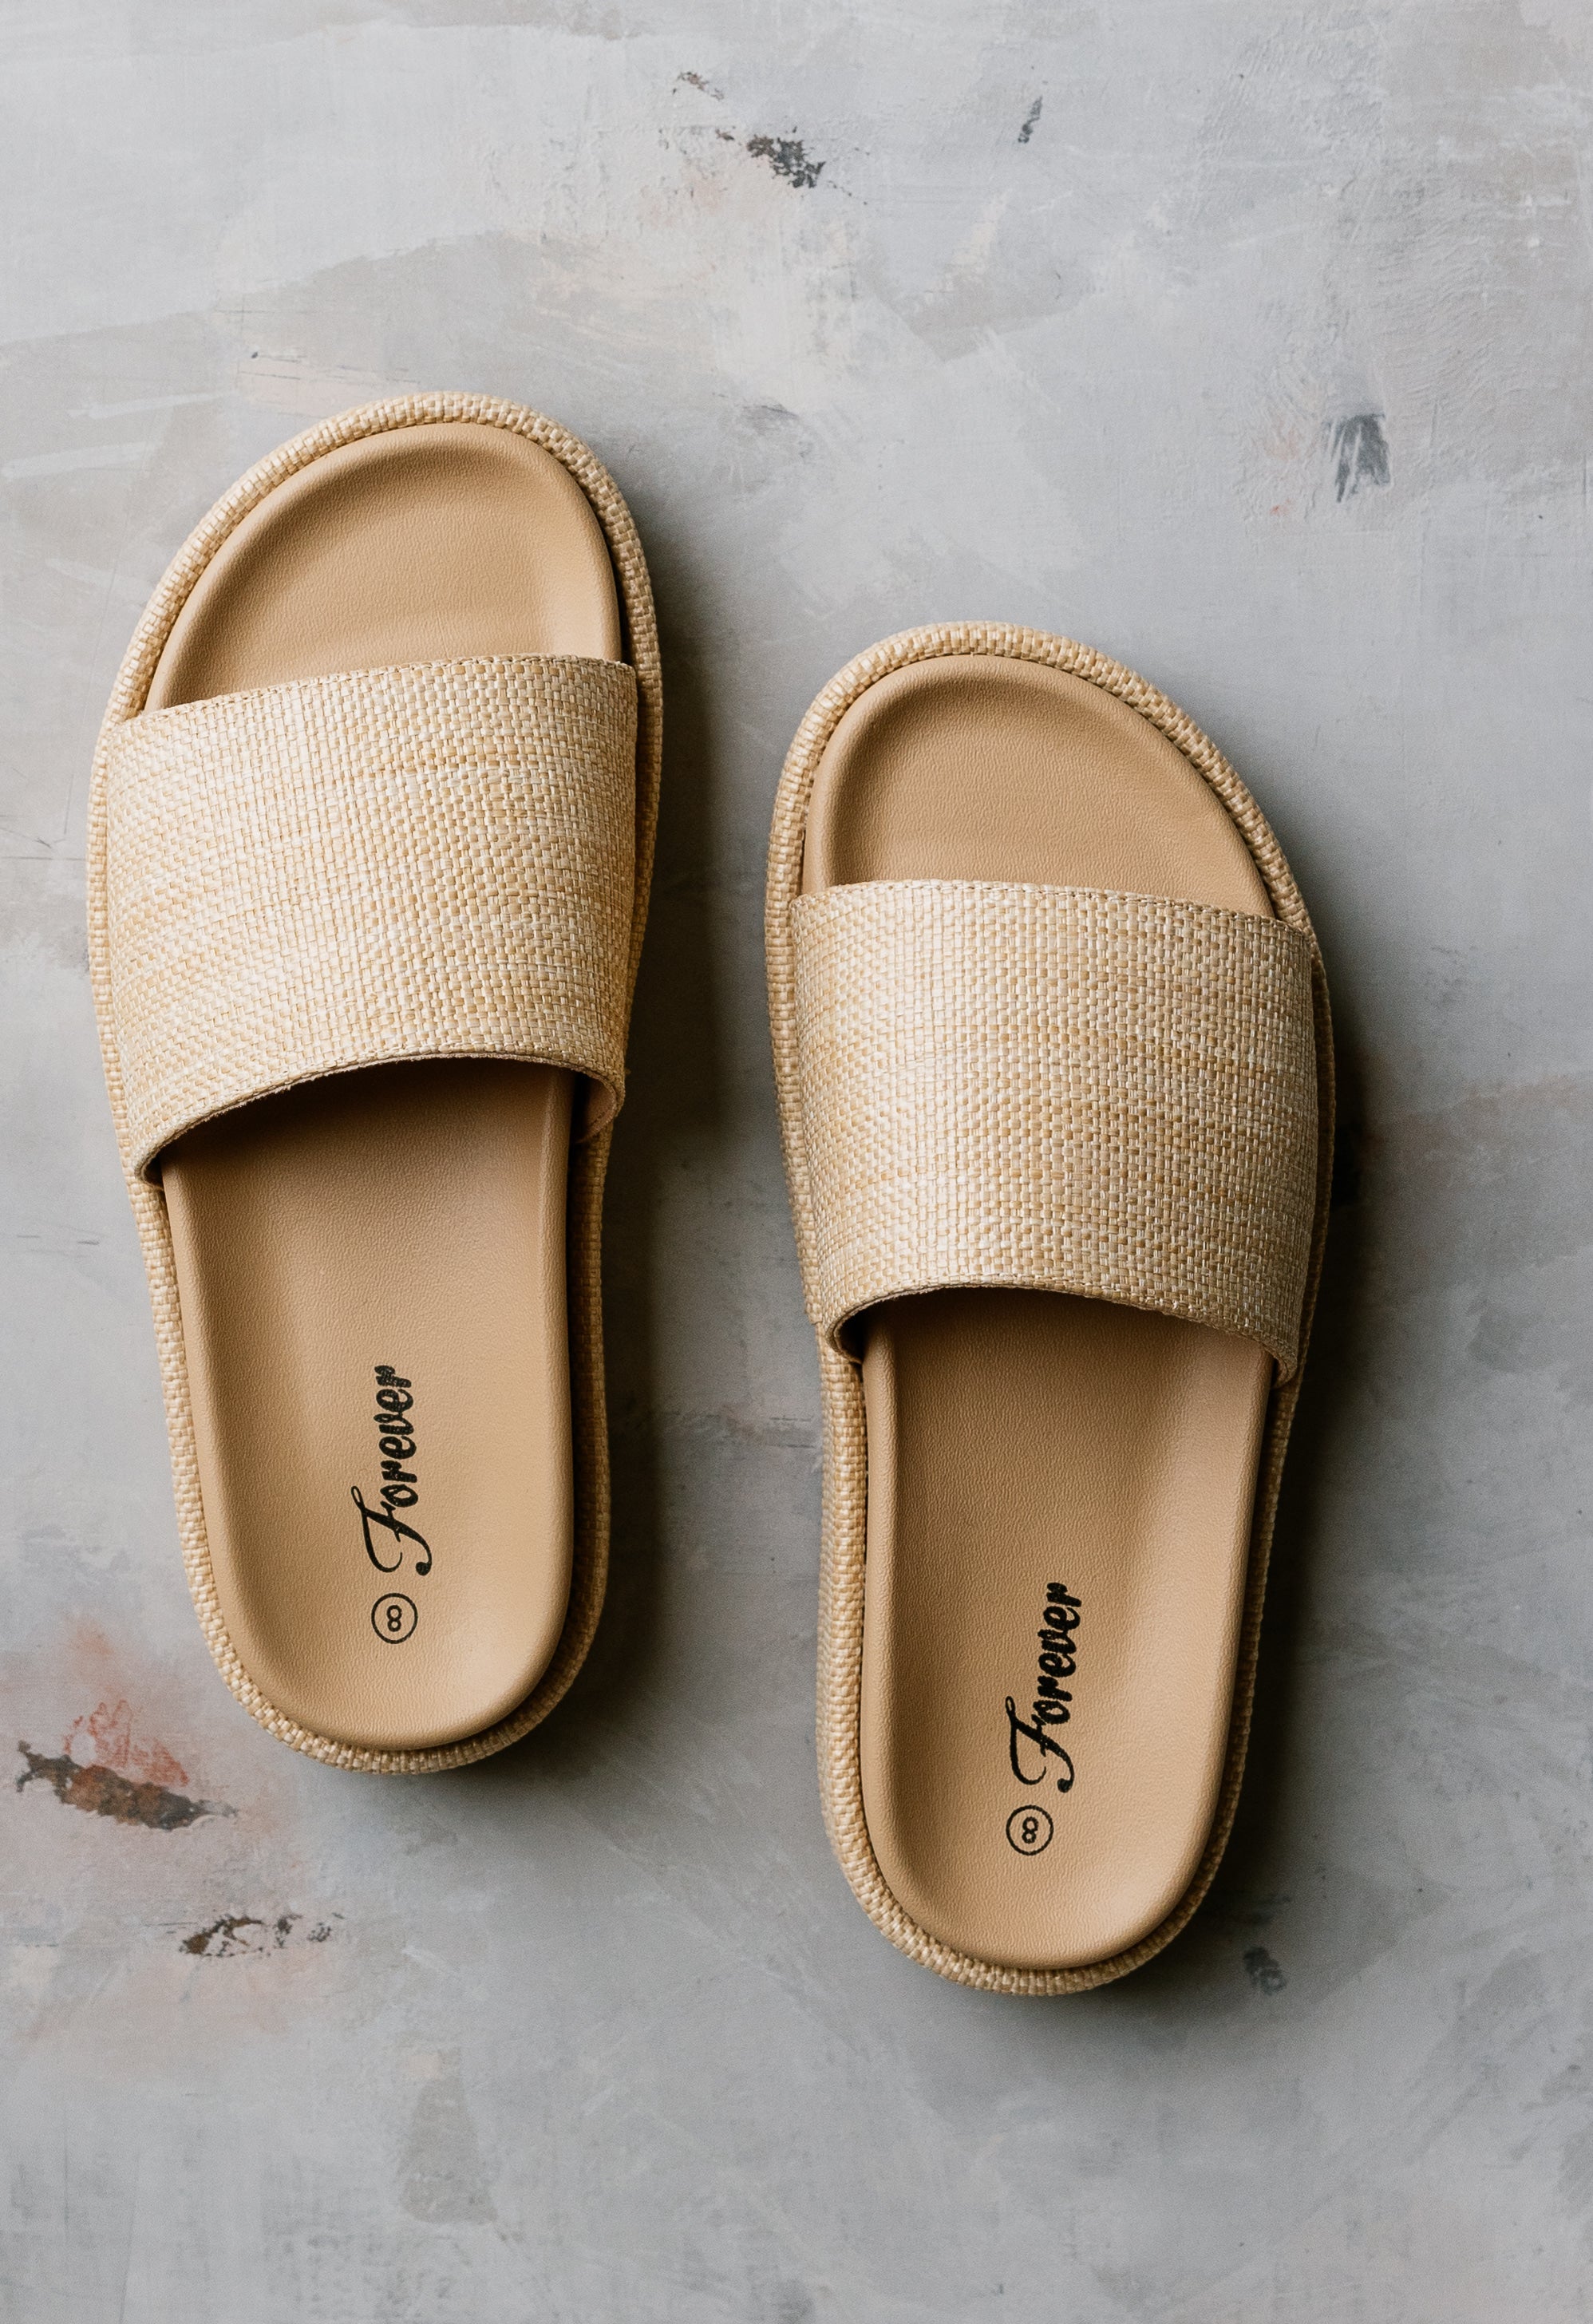 Carpe Diem Raffia Sandals - TAN - willows clothing Sandals